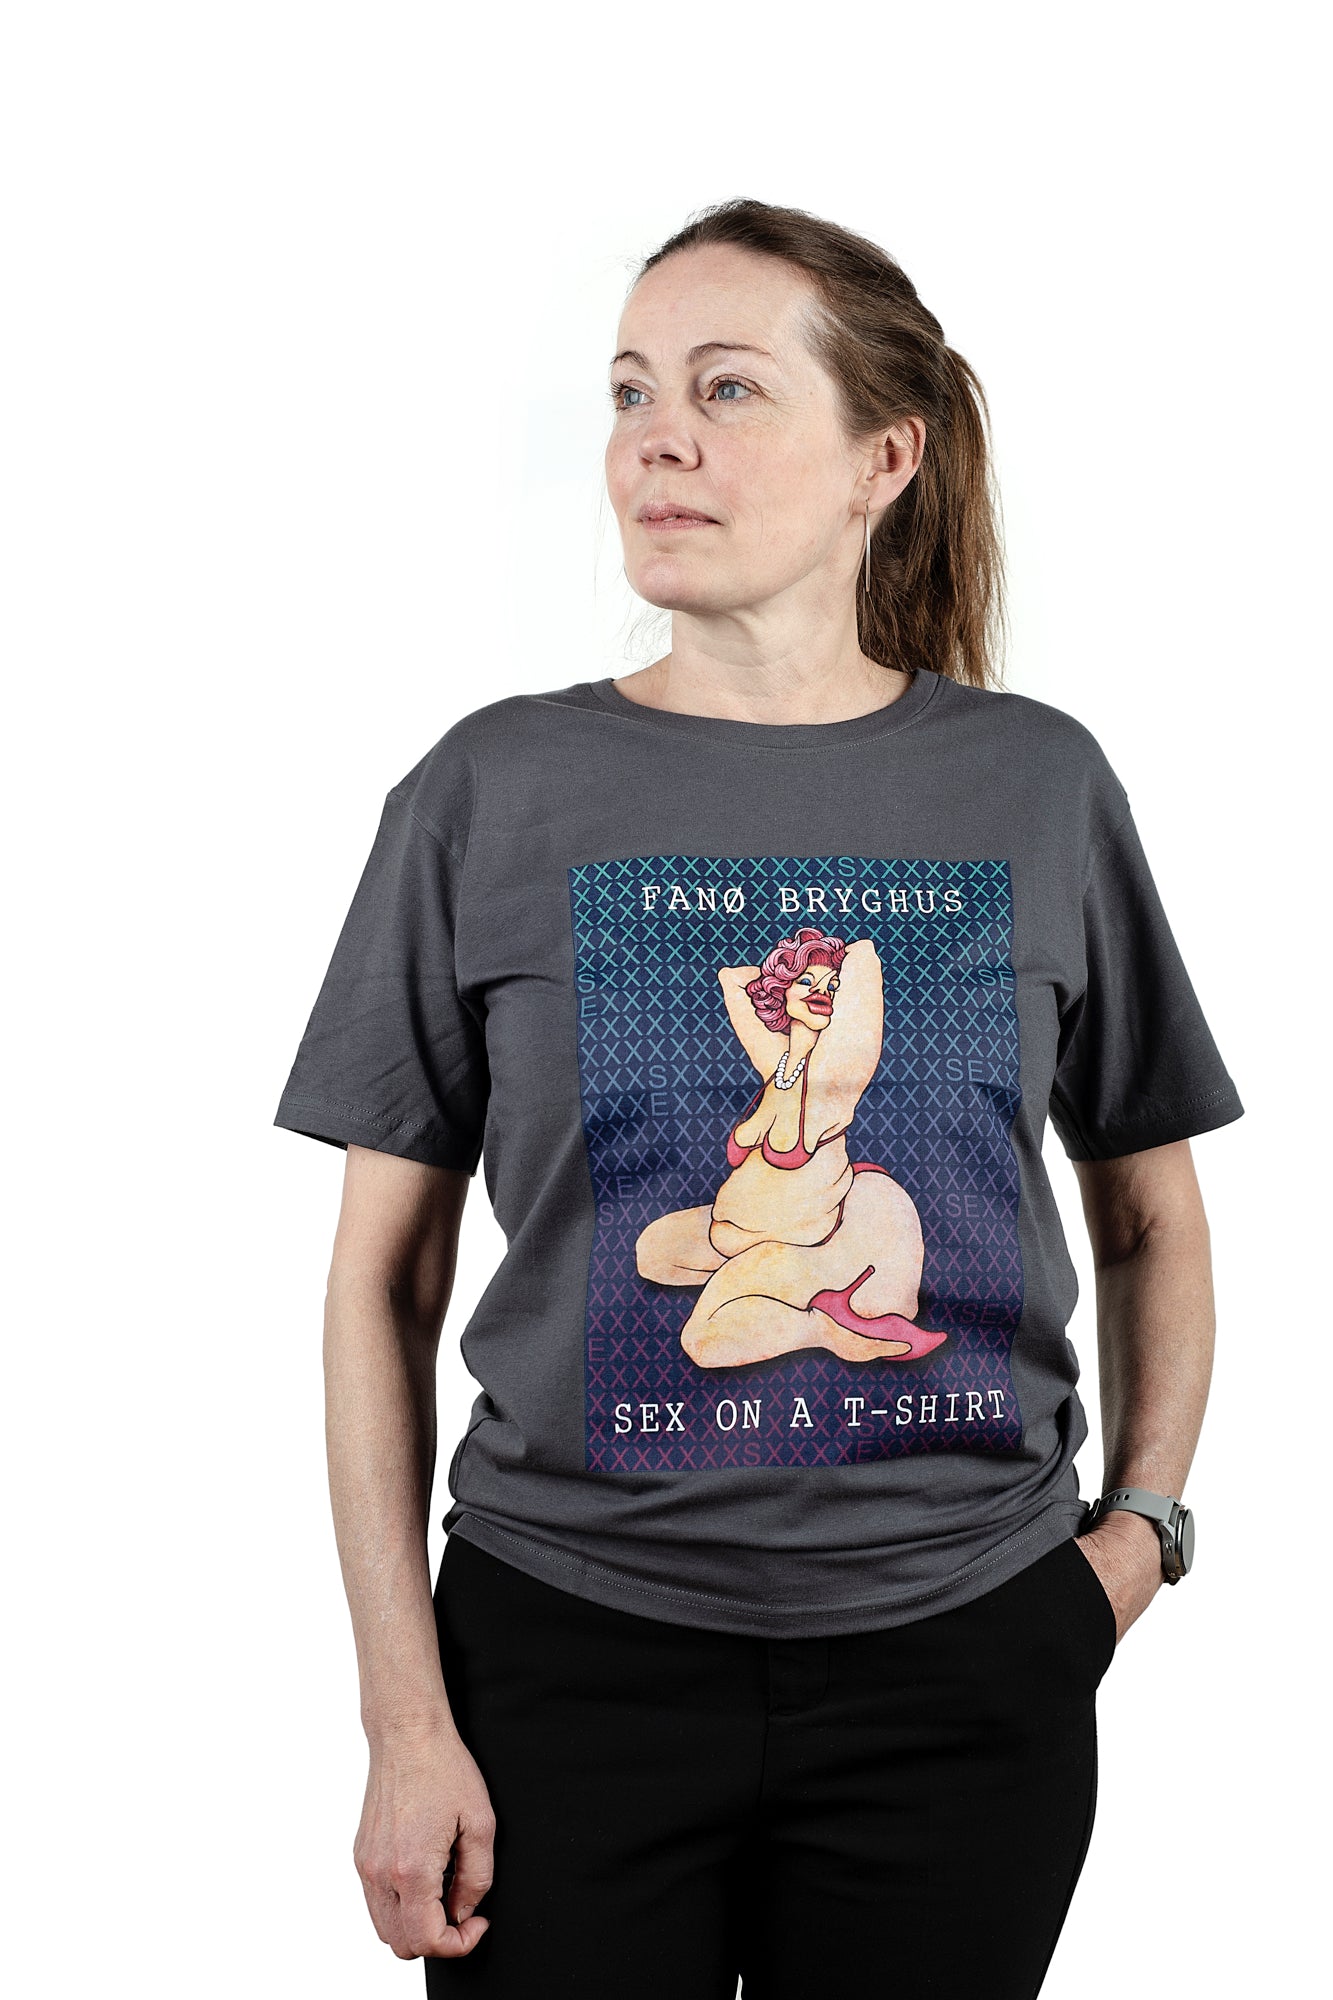 Sex On a T-Shirt